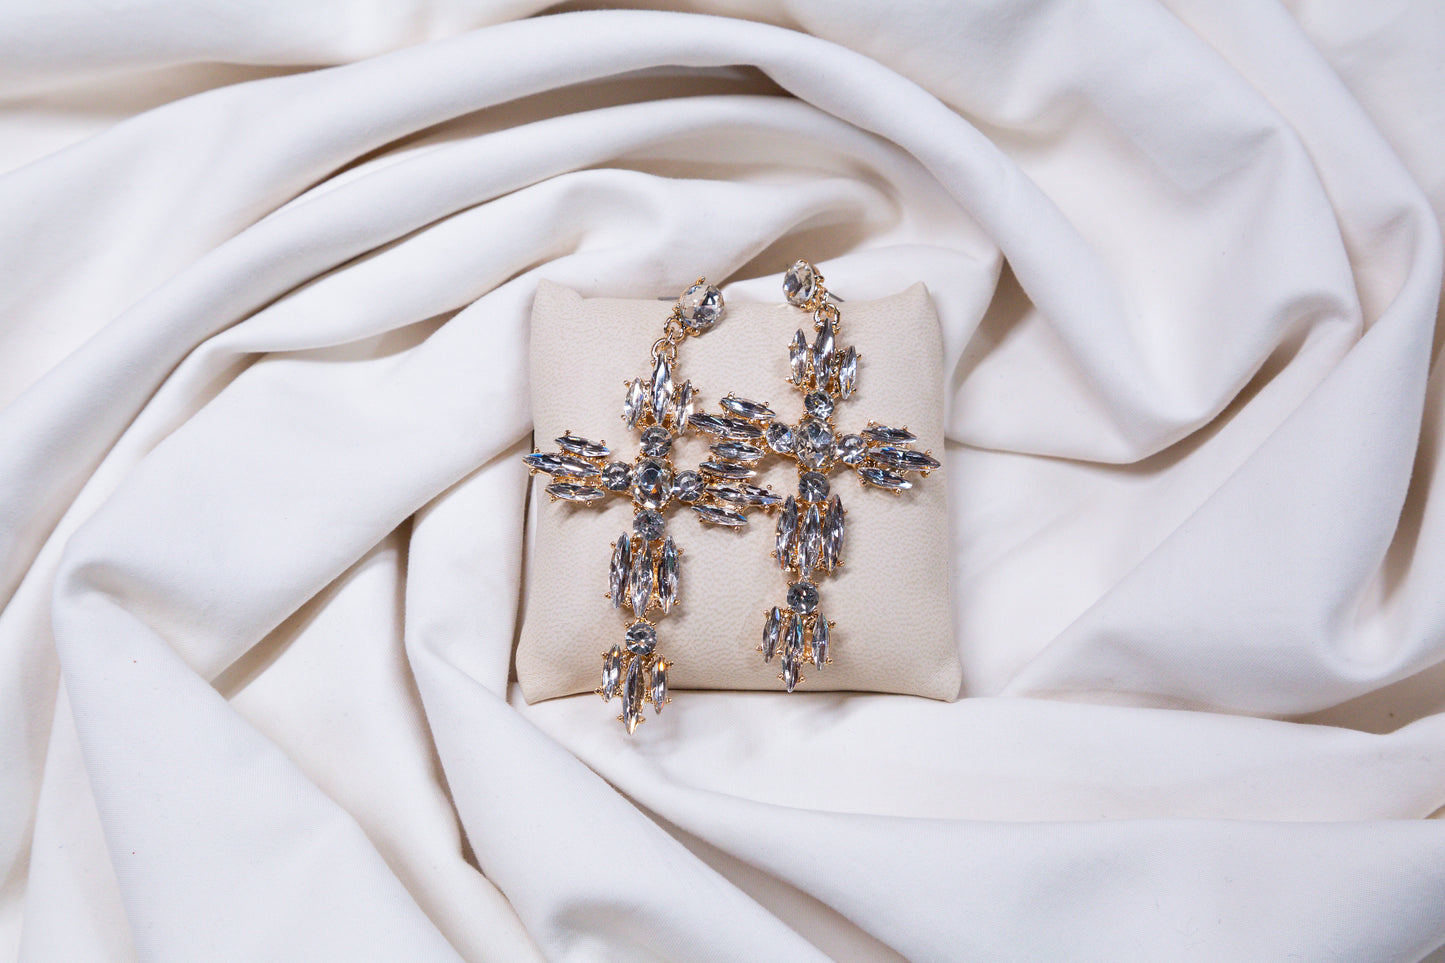 Rhinestone Cross Earrings